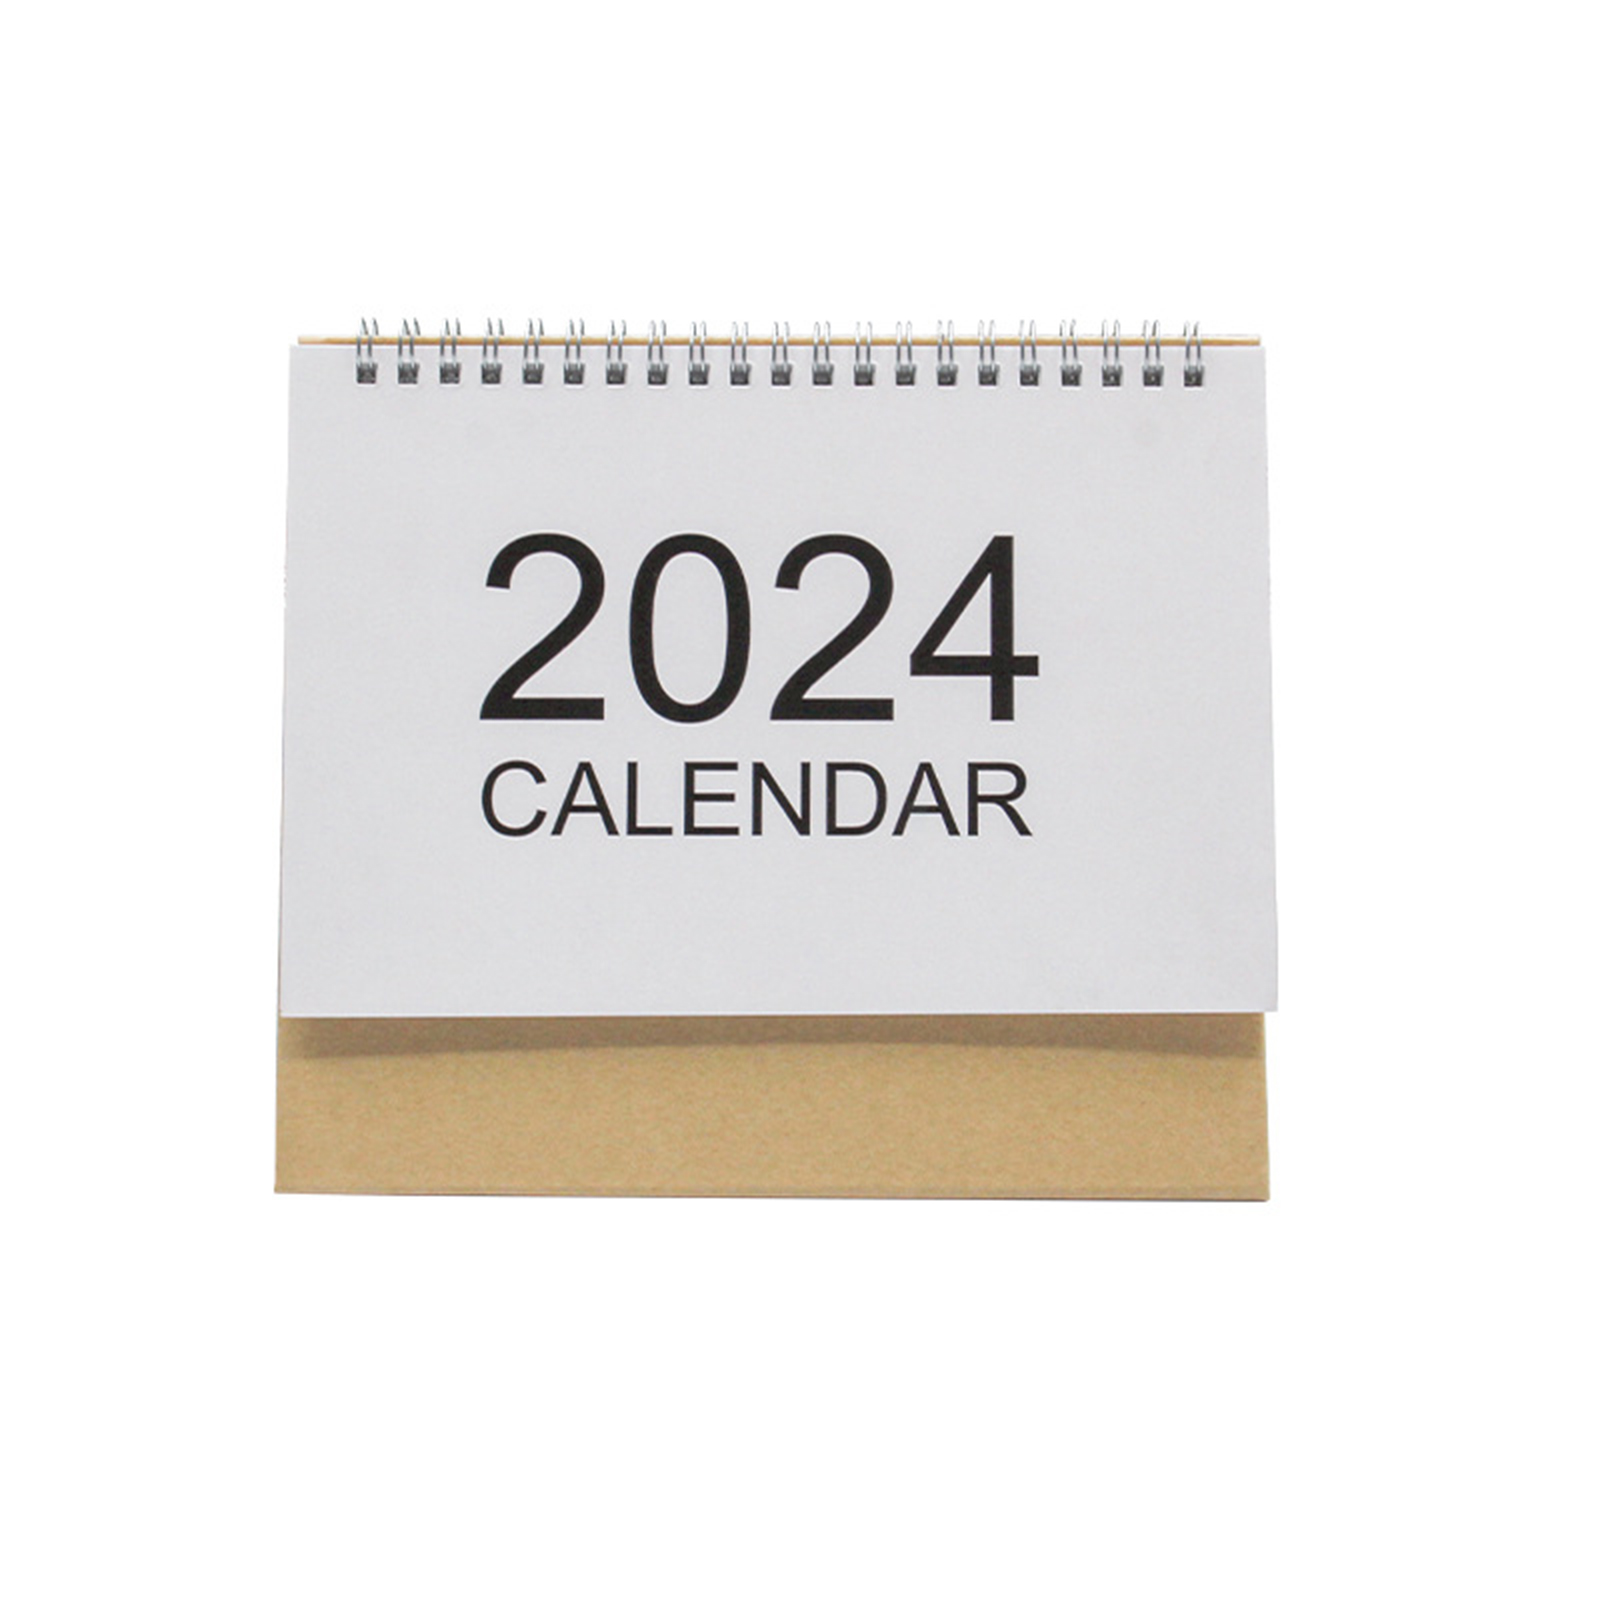 Desk Calendar 2024 Standing Flip Calendar Thick Paper Year Standing Desk Calendar 2024 For Home Office School